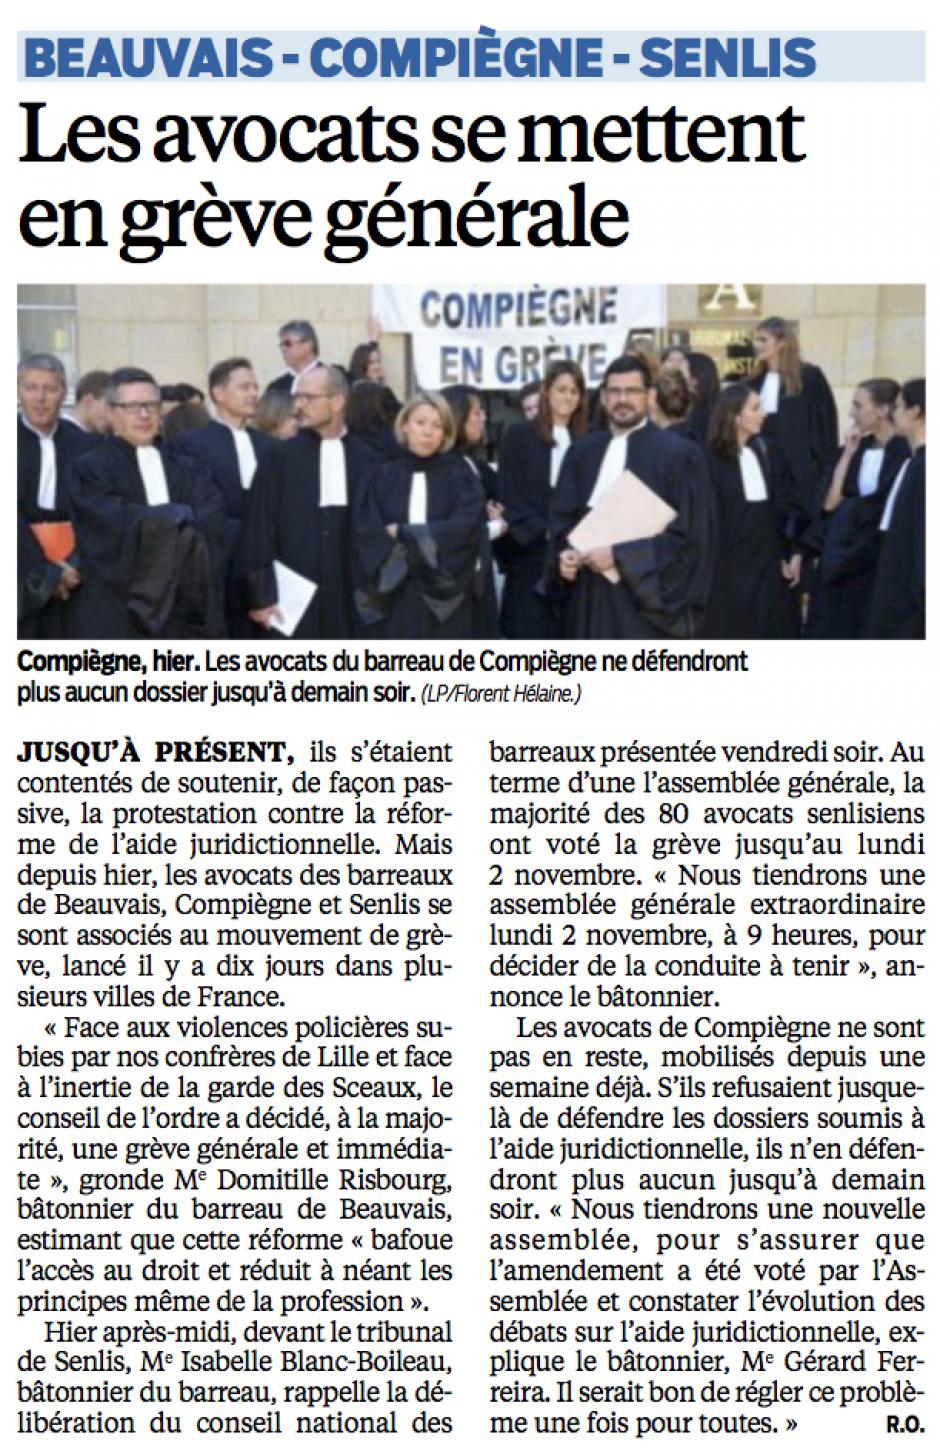 20151027-LeP-Beauvais-Compiègne-Senlis-Les avocats se mettent en grève générale